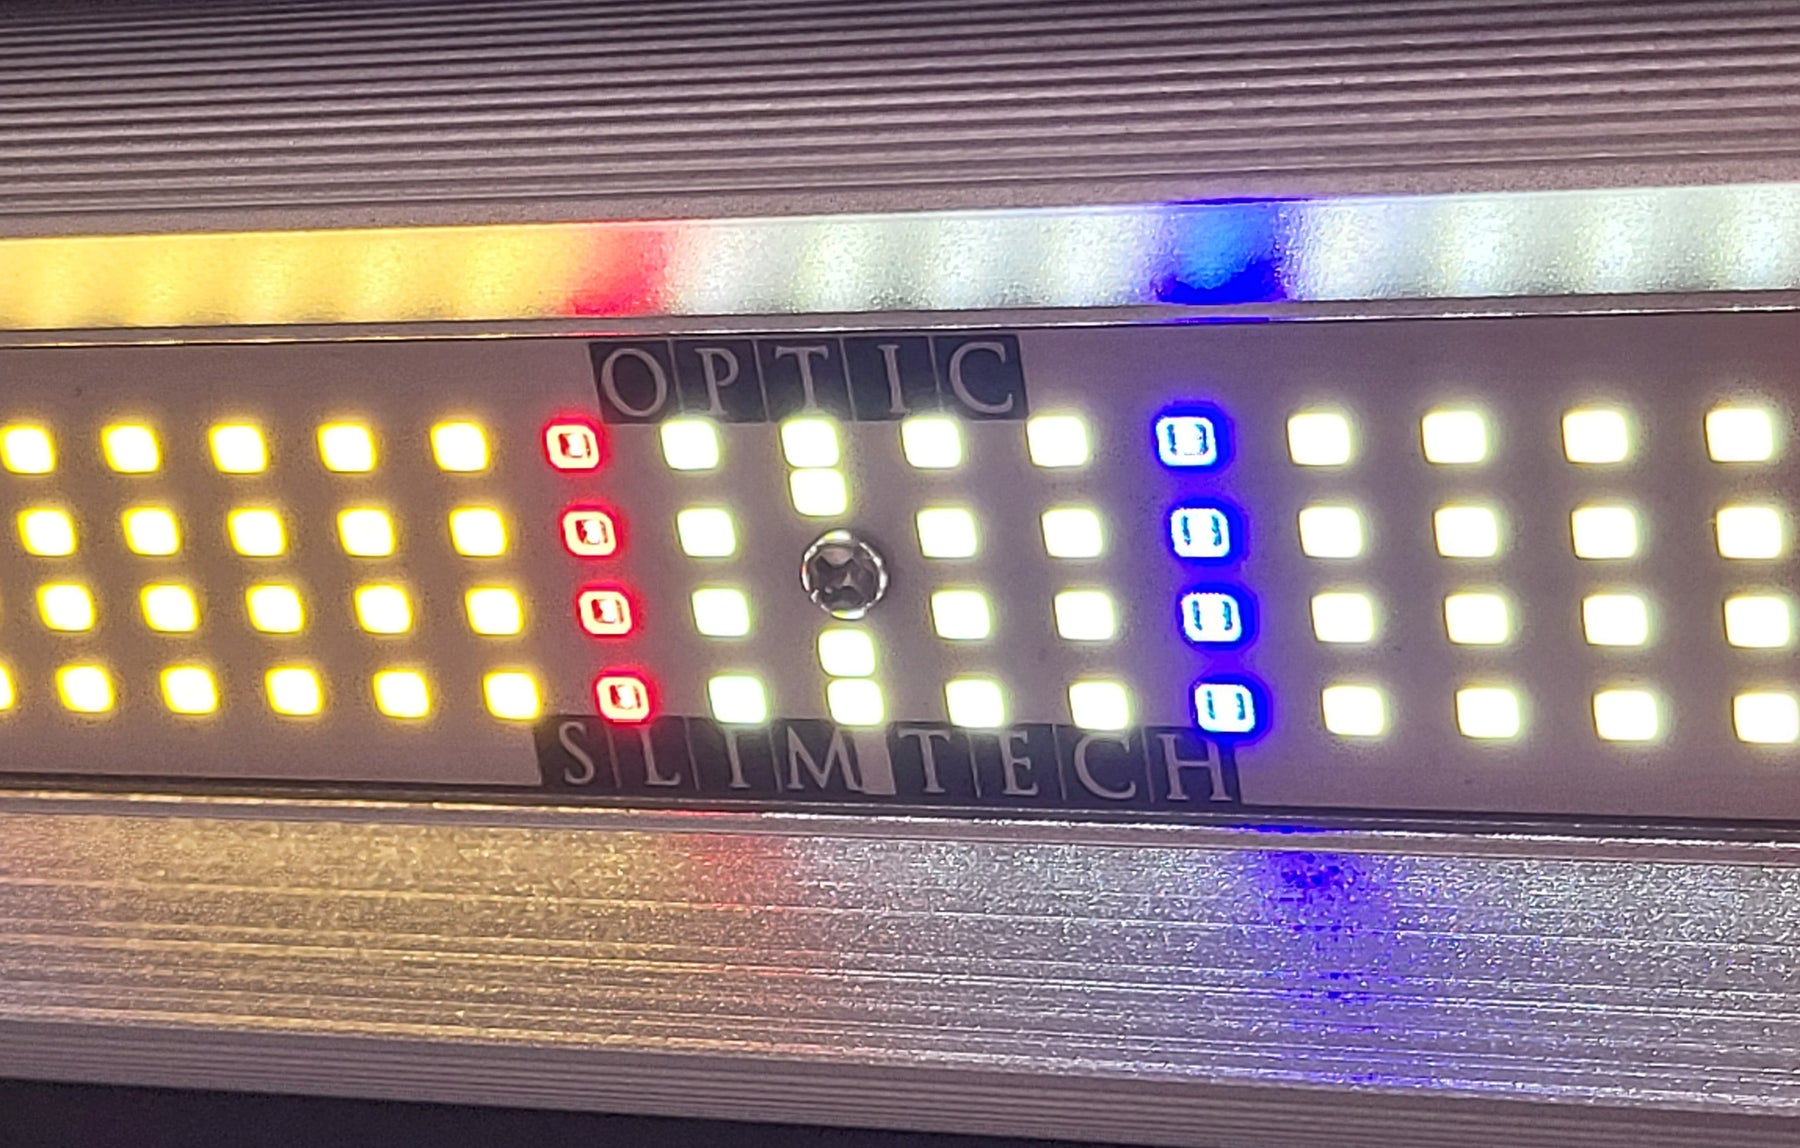 Slim Killa Watt 1000 - 5x5 Growers Dream Light, Over 4,000 LEDs for Under $750 usd